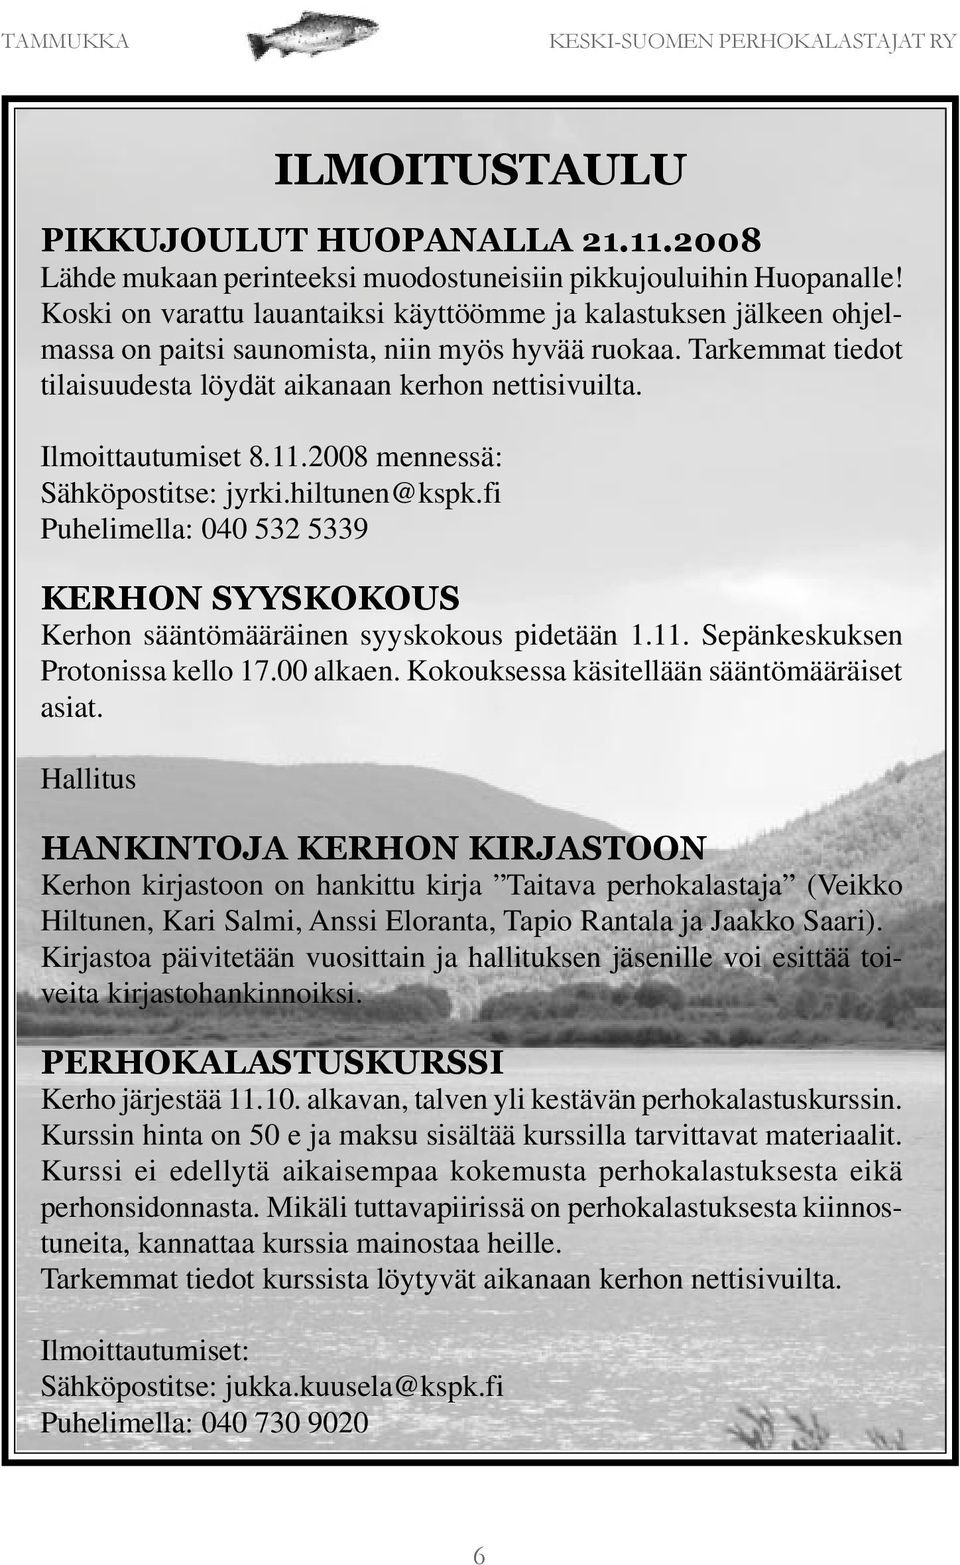 Ilmoittautumiset 8.11.2008 mennessä: Sähköpostitse: jyrki.hiltunen@kspk.fi Puhelimella: 040 532 5339 KERHON SYYSKOKOUS Kerhon sääntömääräinen syyskokous pidetään 1.11. Sepänkeskuksen Protonissa kello 17.